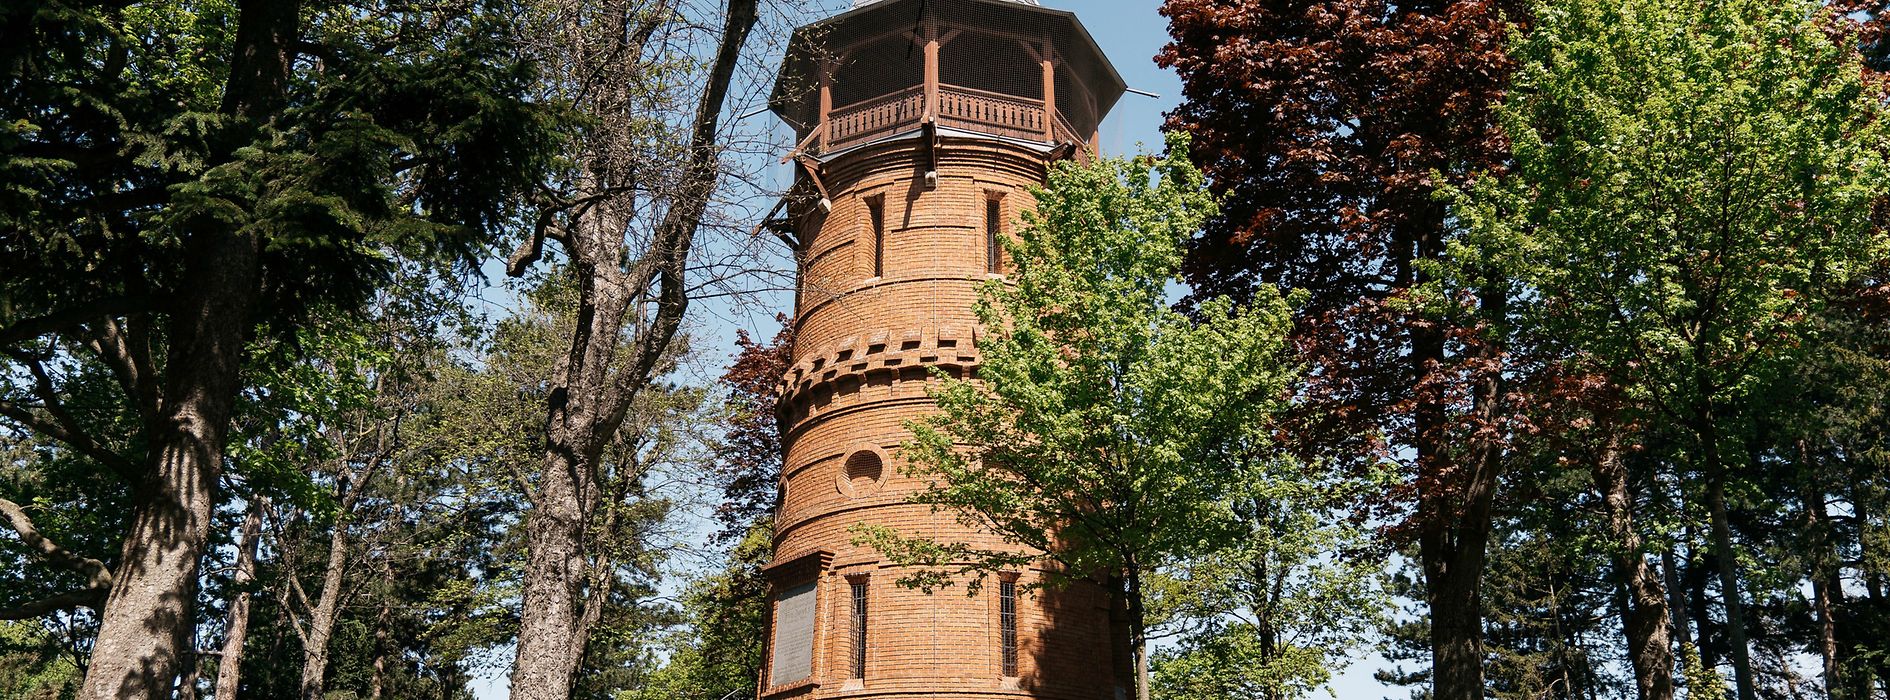 Wieża widokowa Paulinenwarte w wiedeńskim parku Türkenschanzpark